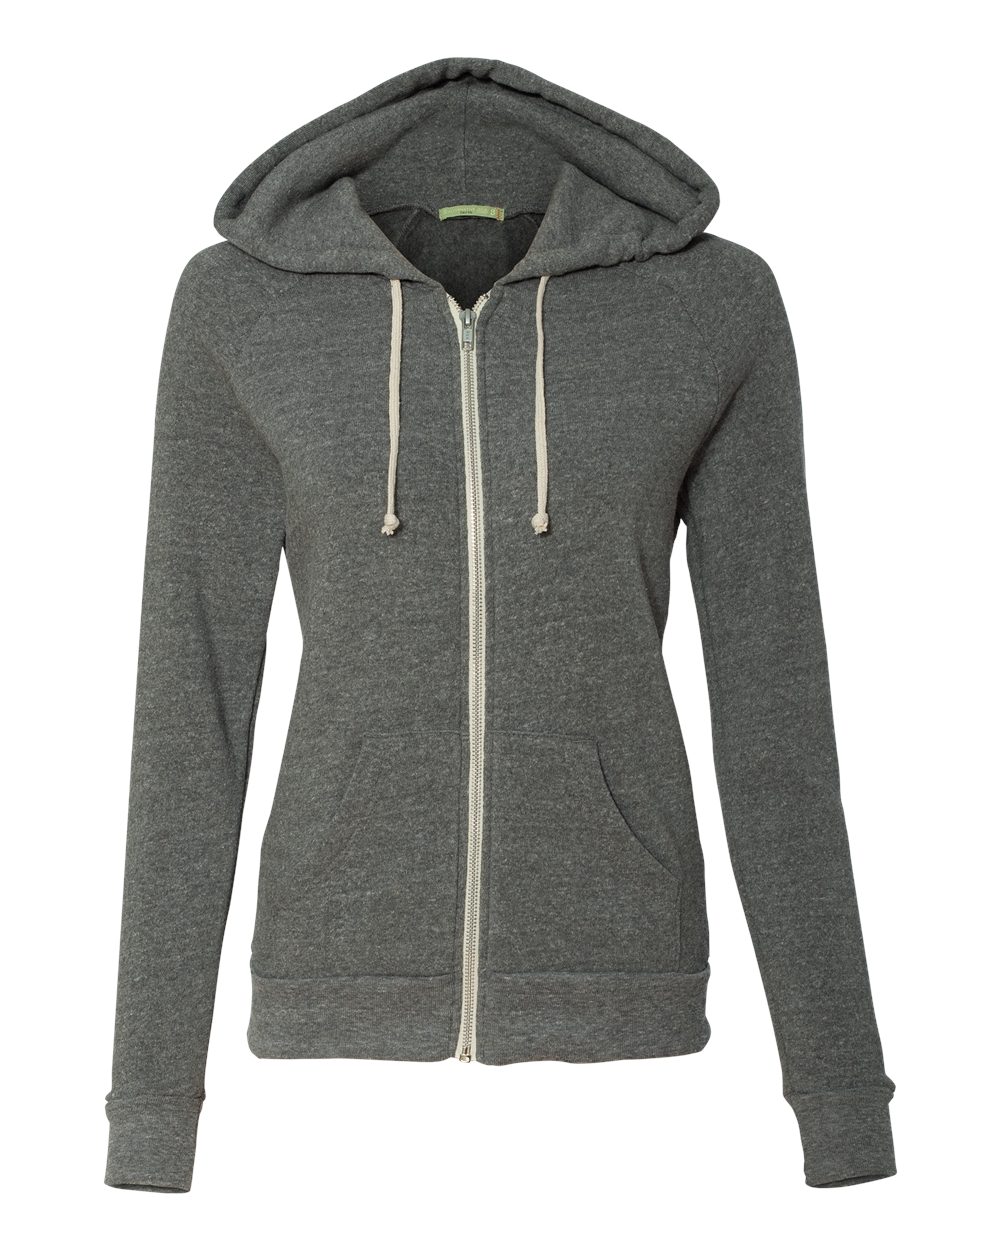 New Alternative Ladies' Eco-Fleece Adrian Full-Zip Hooded Sweatshirt 9573 SALE 